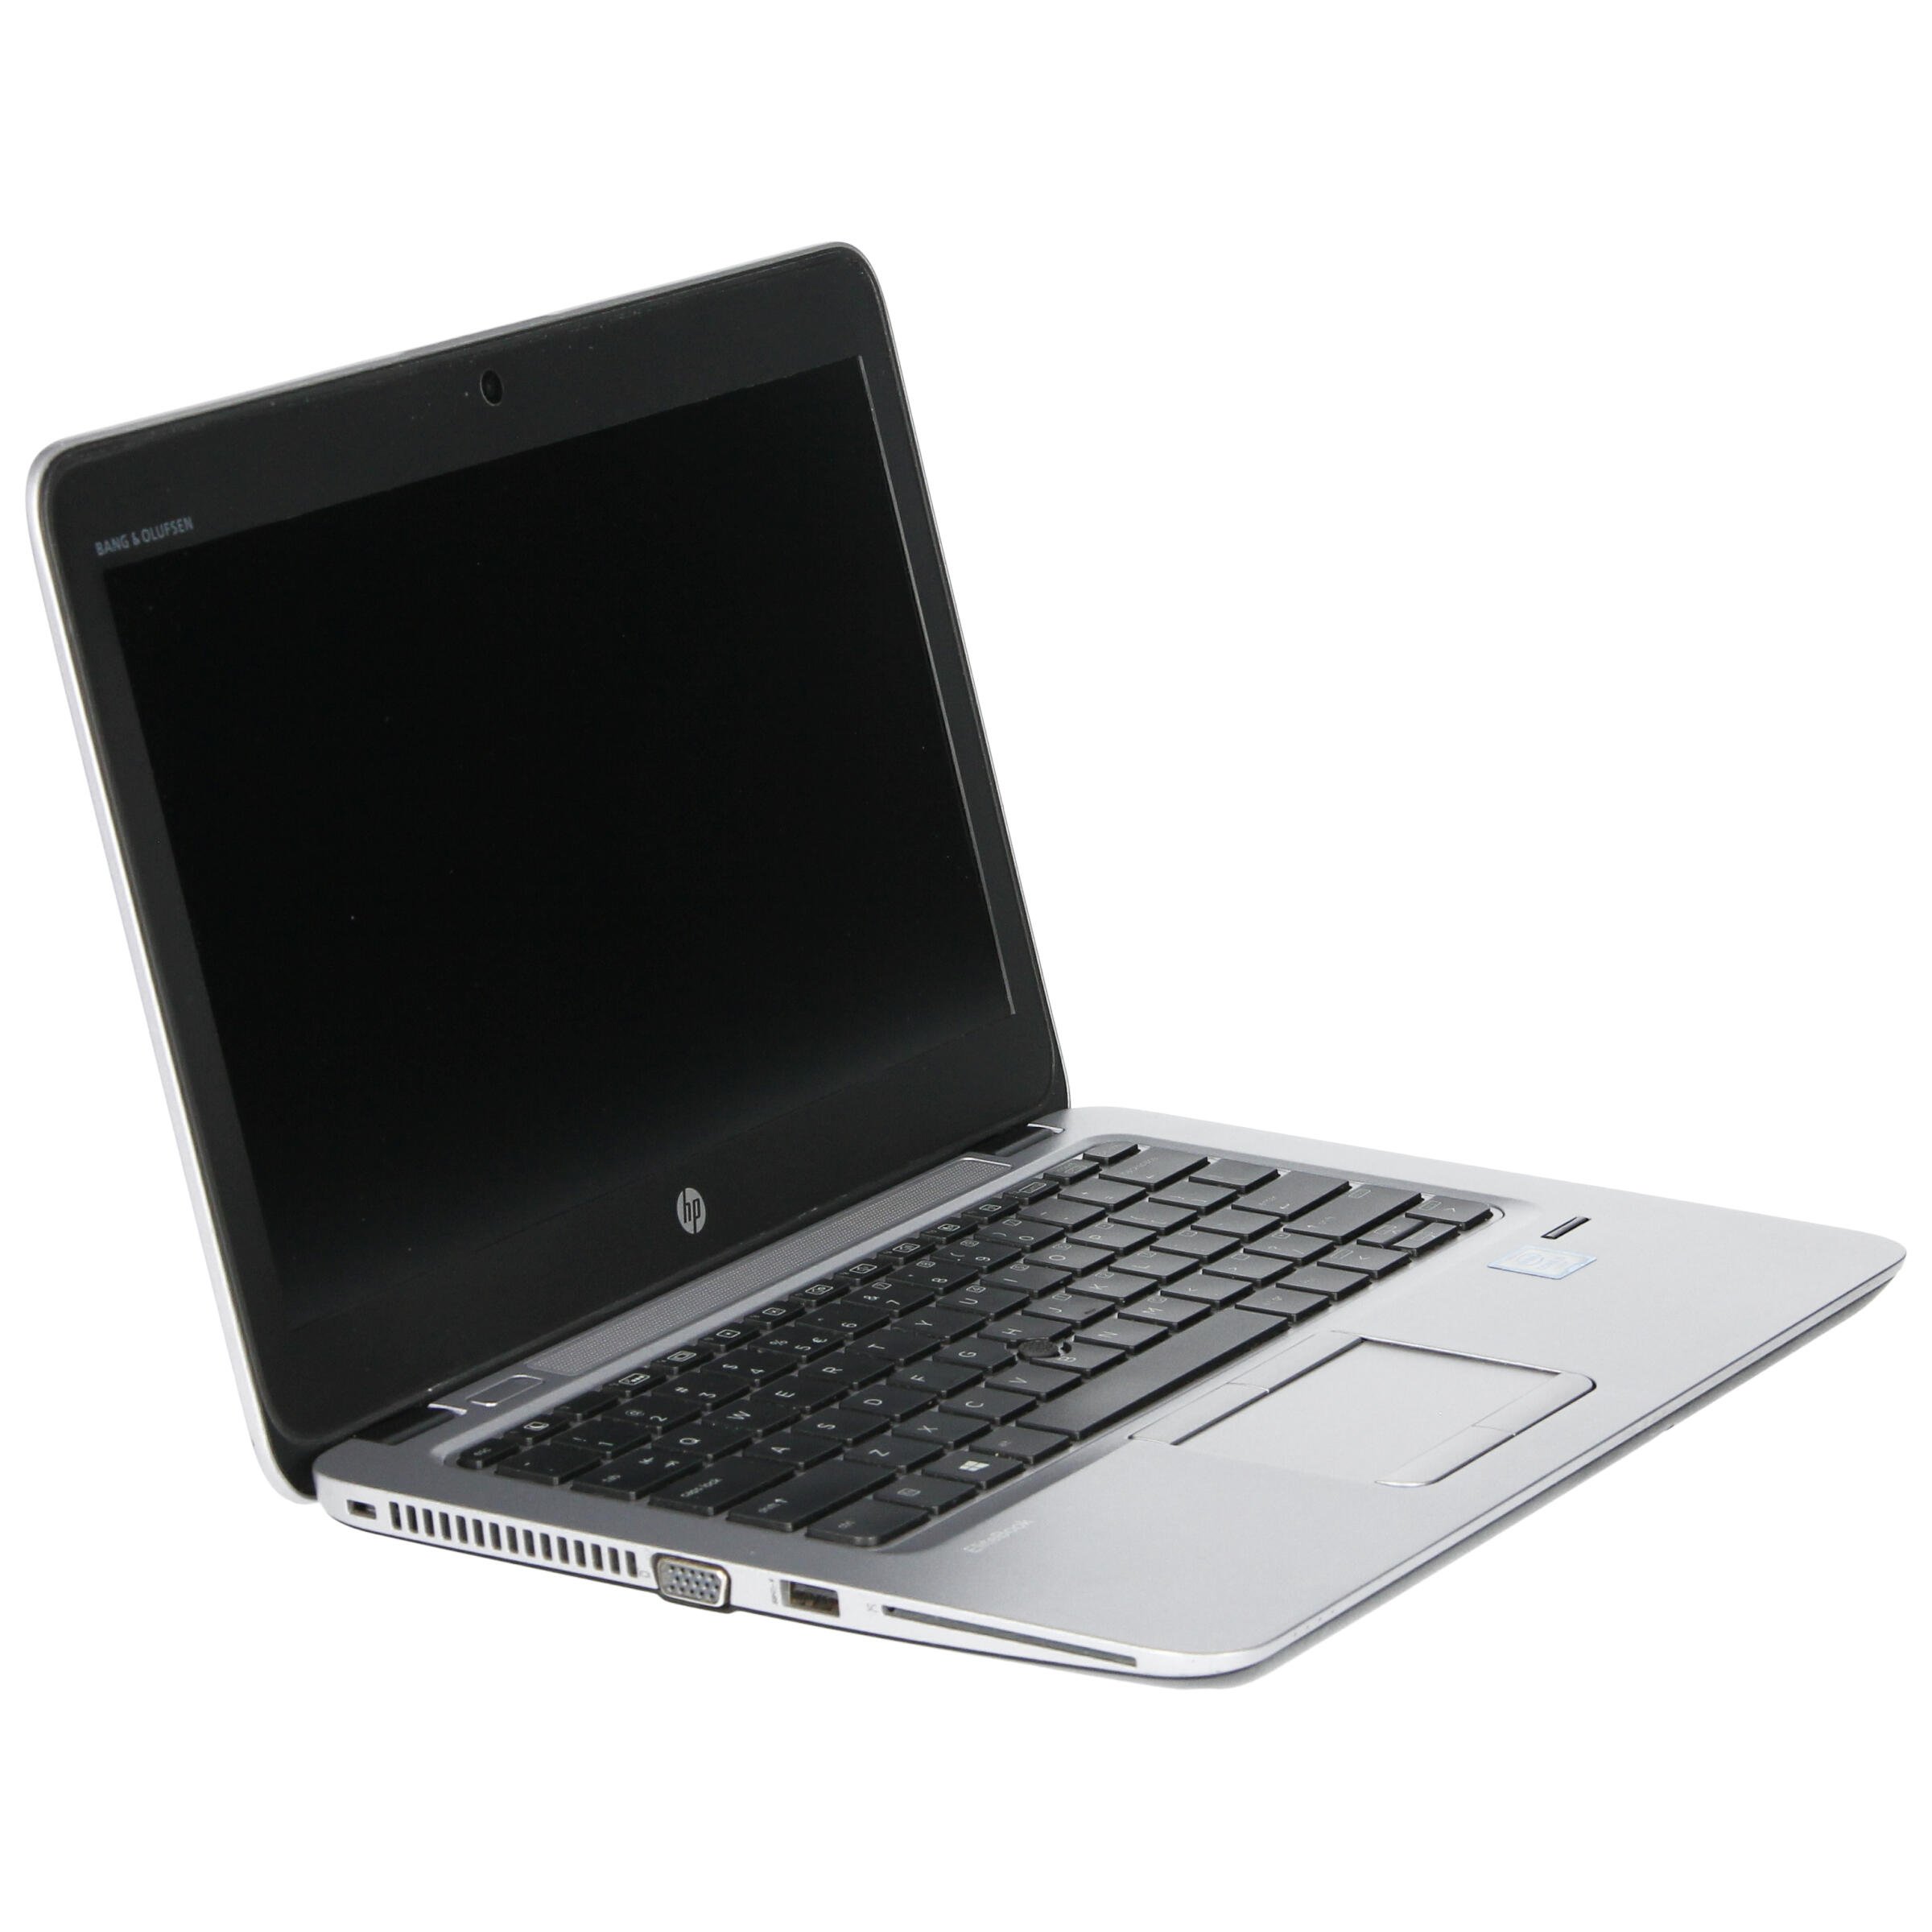 Laptop Hp Elitebook 820 G3 I5 6300u 8 Gb 256 Ssd 125 Hd W10pro A Rnewpl 1095